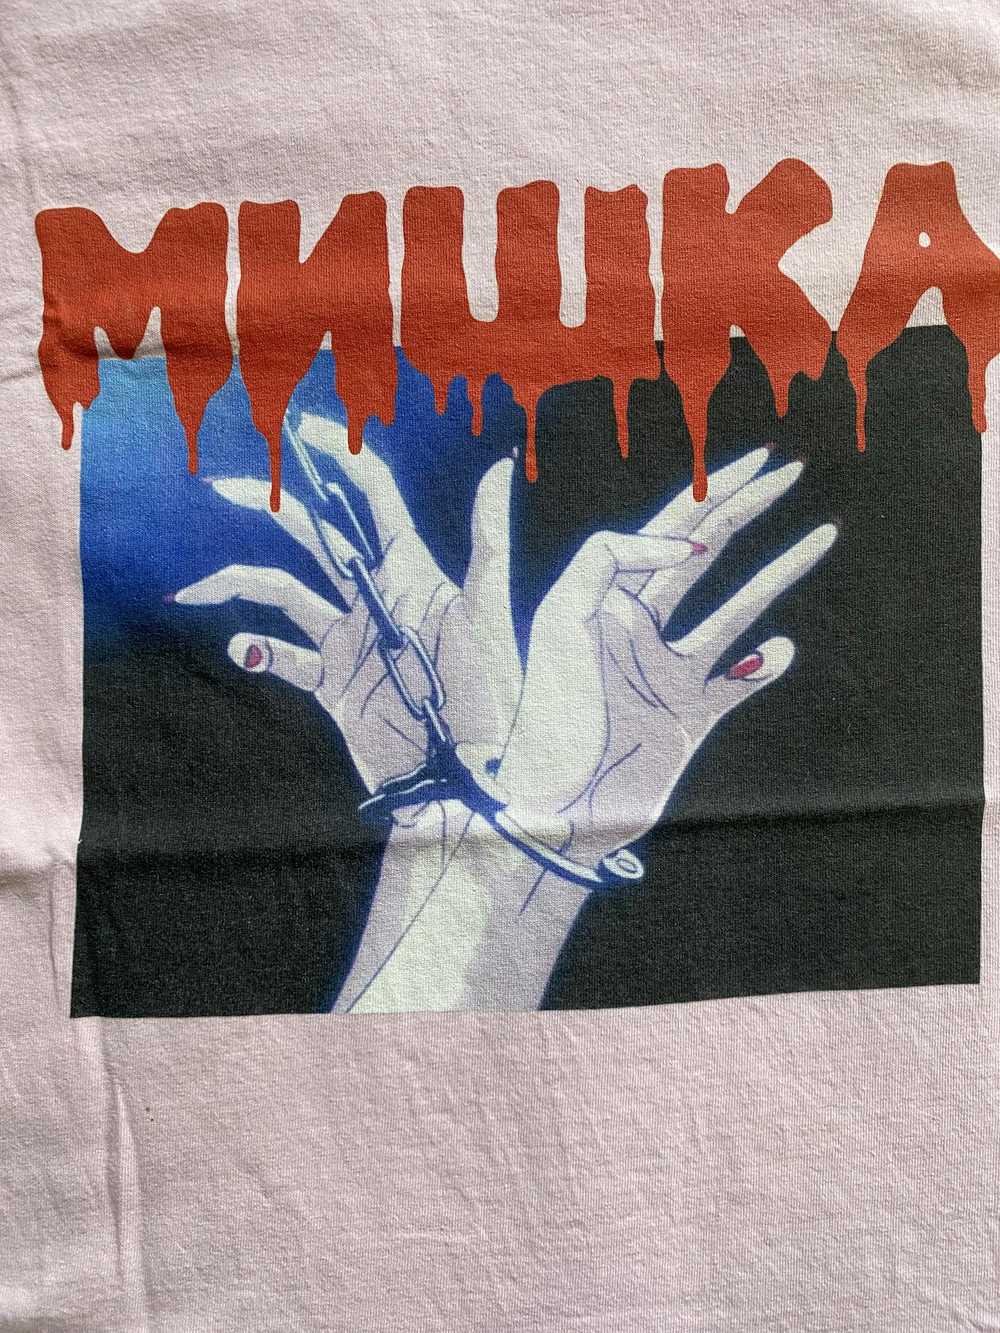 Mishka Mishka MNWKA x 72 hour Exclusive: Cuffed T… - image 2